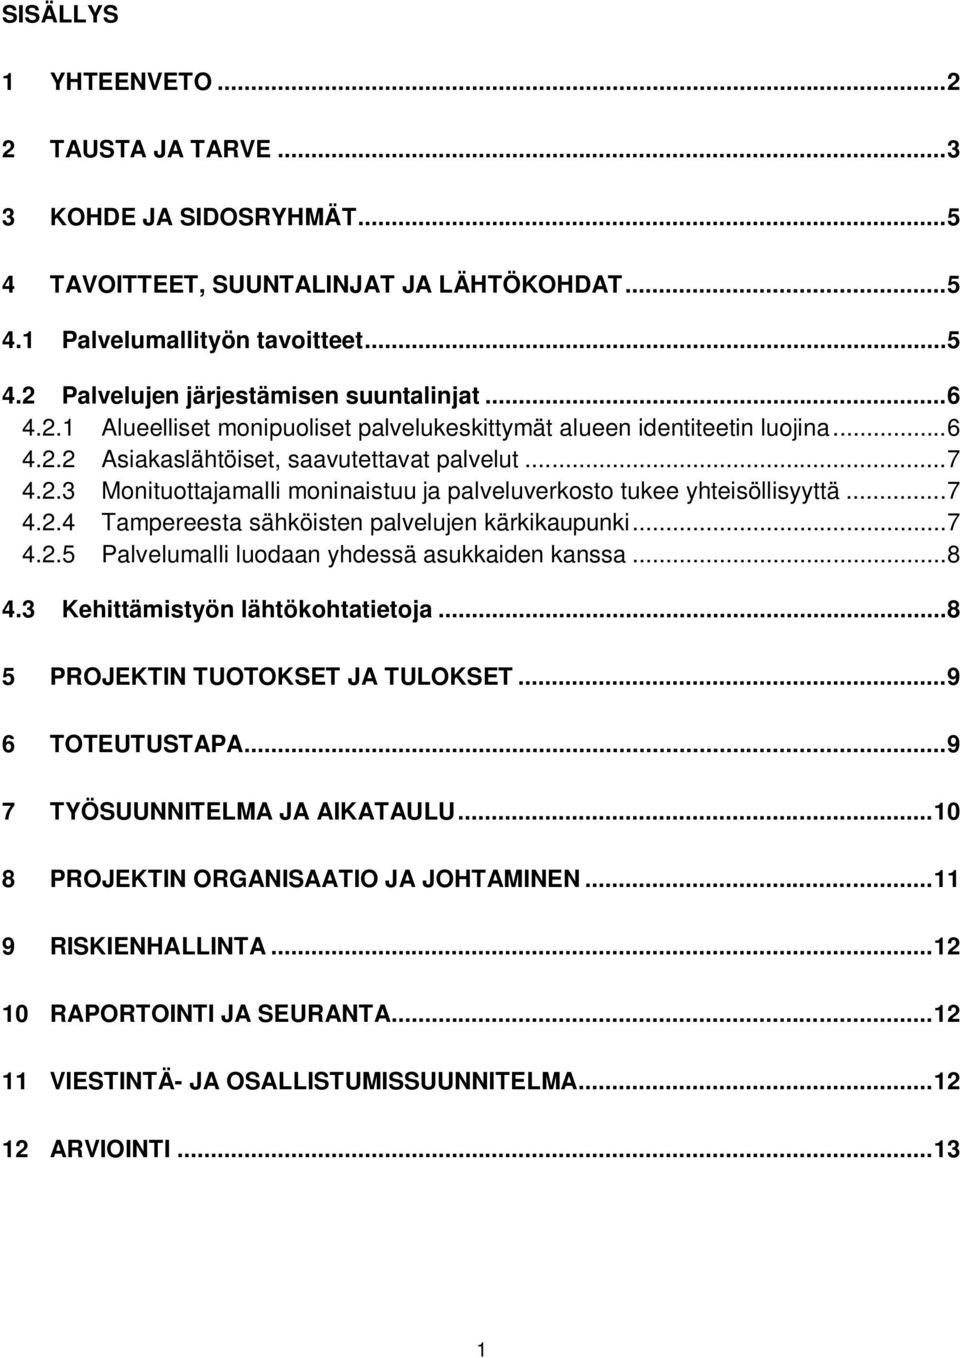 .. 7 4.2.4 Tampereesta sähköisten palvelujen kärkikaupunki... 7 4.2.5 Palvelumalli luodaan yhdessä asukkaiden kanssa... 8 4.3 Kehittämistyön lähtökohtatietoja... 8 5 PROJEKTIN TUOTOKSET JA TULOKSET.